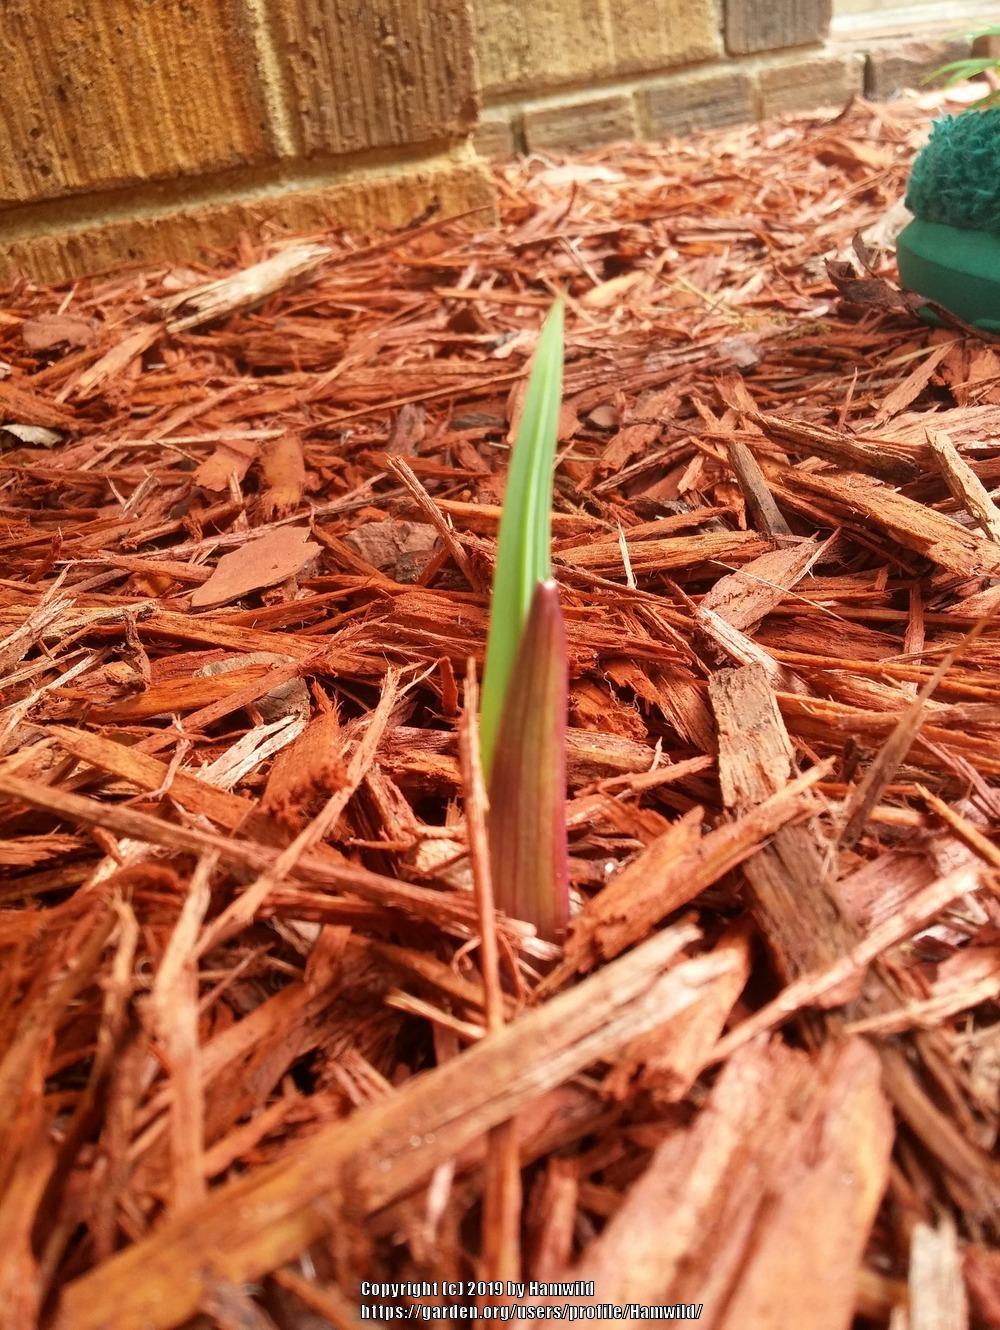 Photo of Gladiola (Gladiolus) uploaded by Hamwild